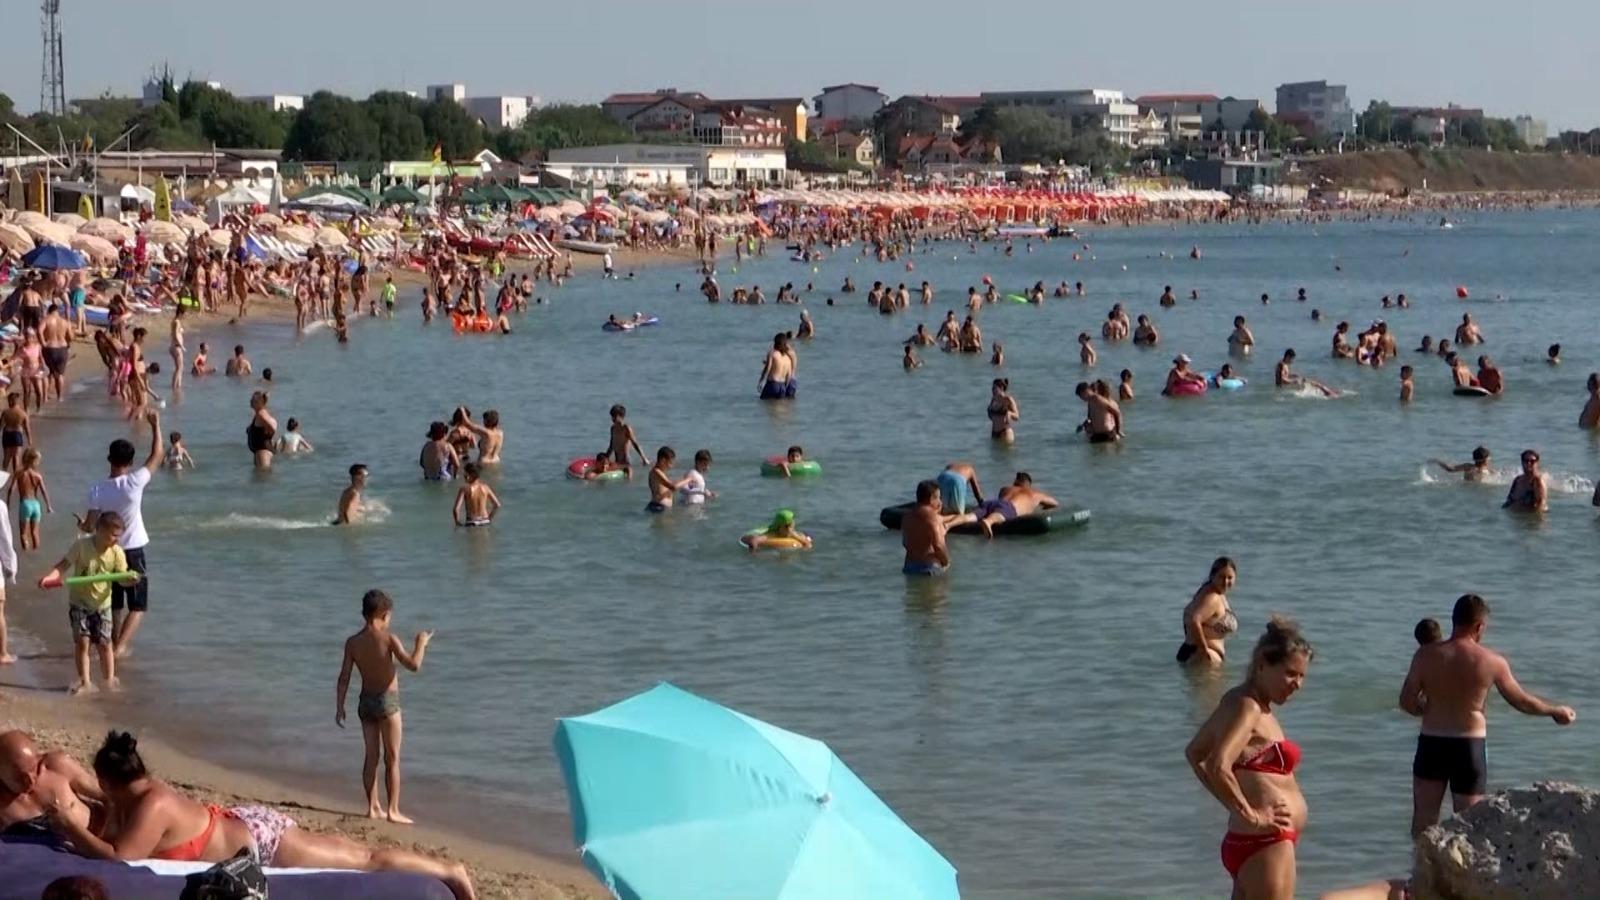 Staţiunile de pe litoralul românesc care oferă reduceri de până la aproape 50% la cazare. Turiştii pot plăti şi în rate pachetele